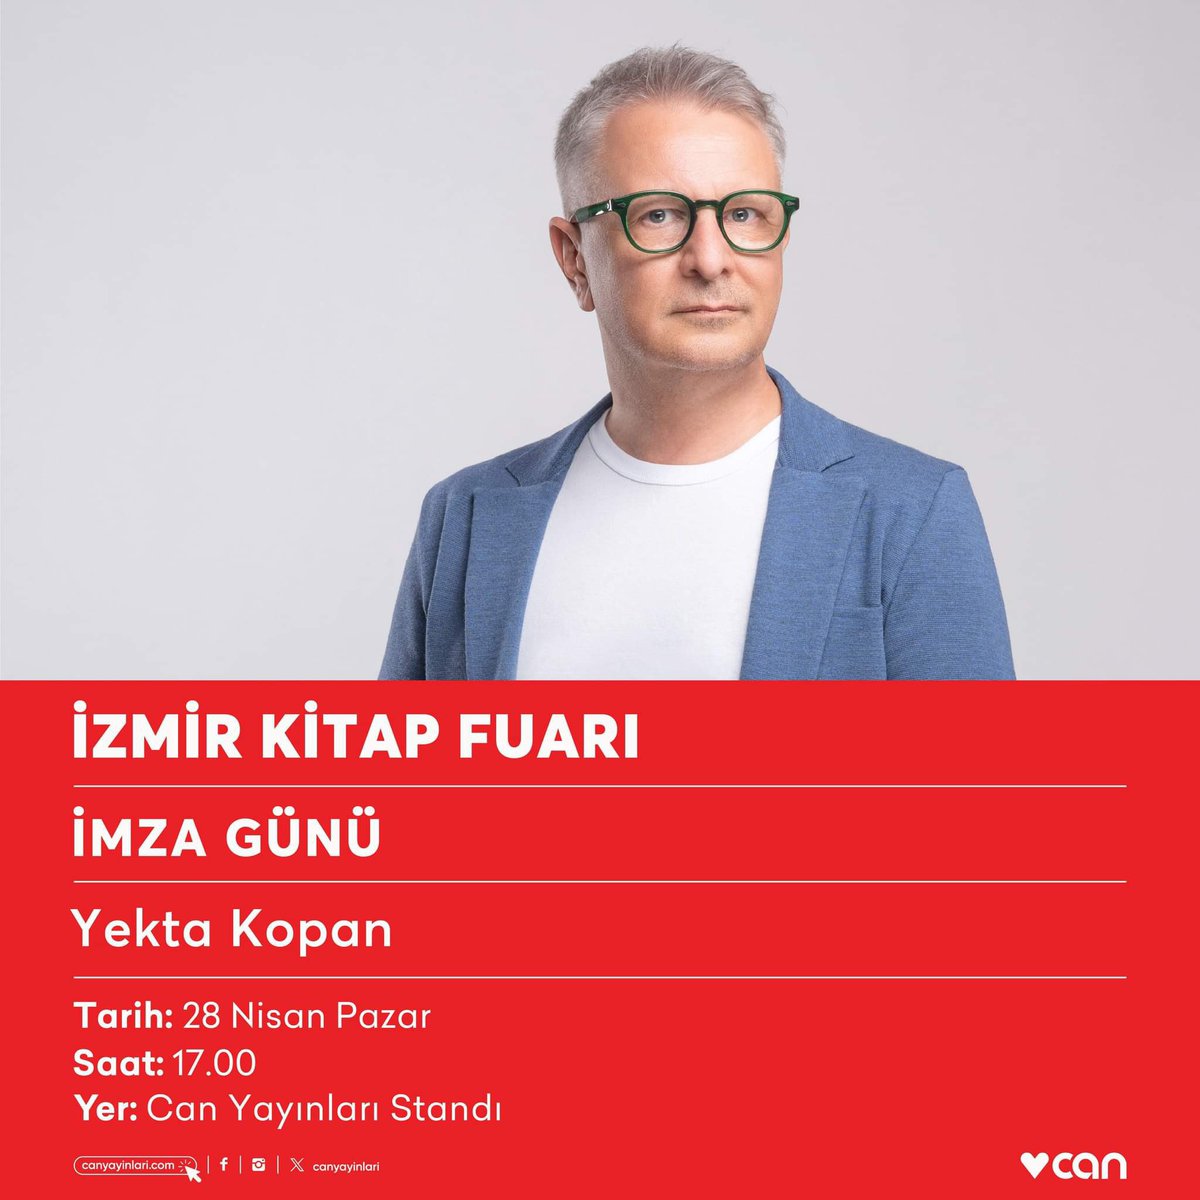 Yekta Kopan bugün saat 17.00’de #İzmirKitapFuarı Can Yayınları standında okurlarıyla buluşacak.